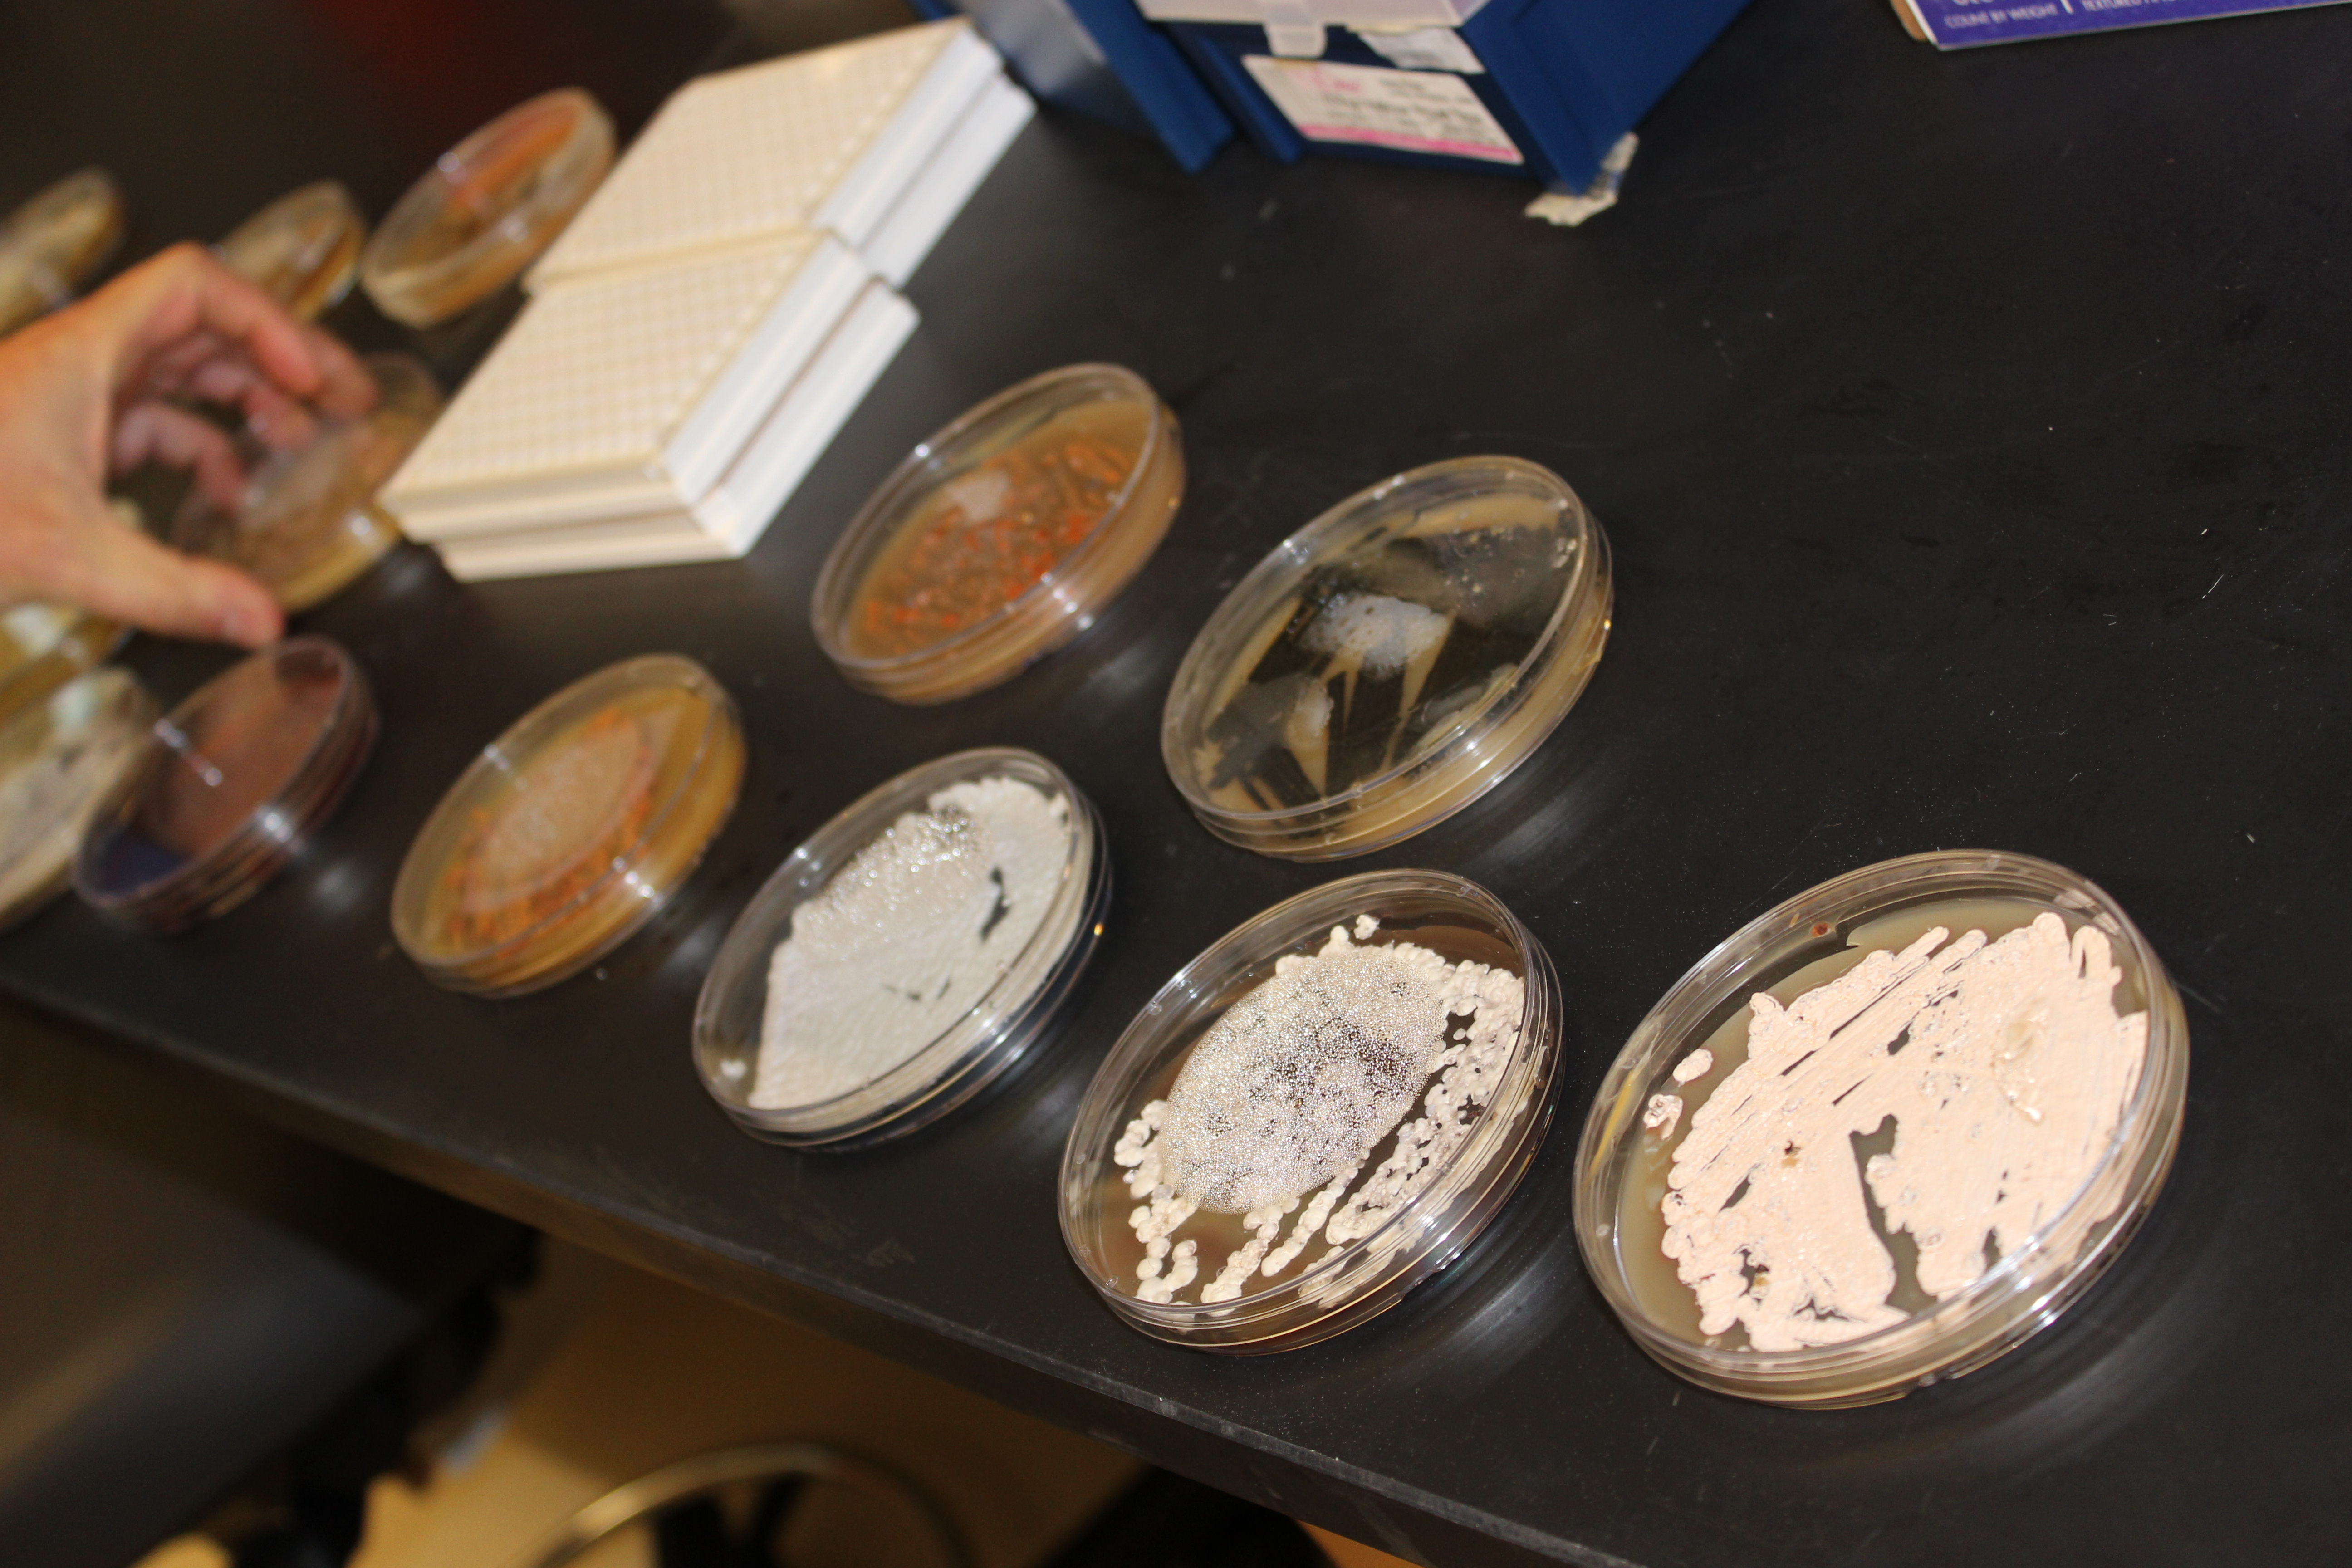 Bacteria samples